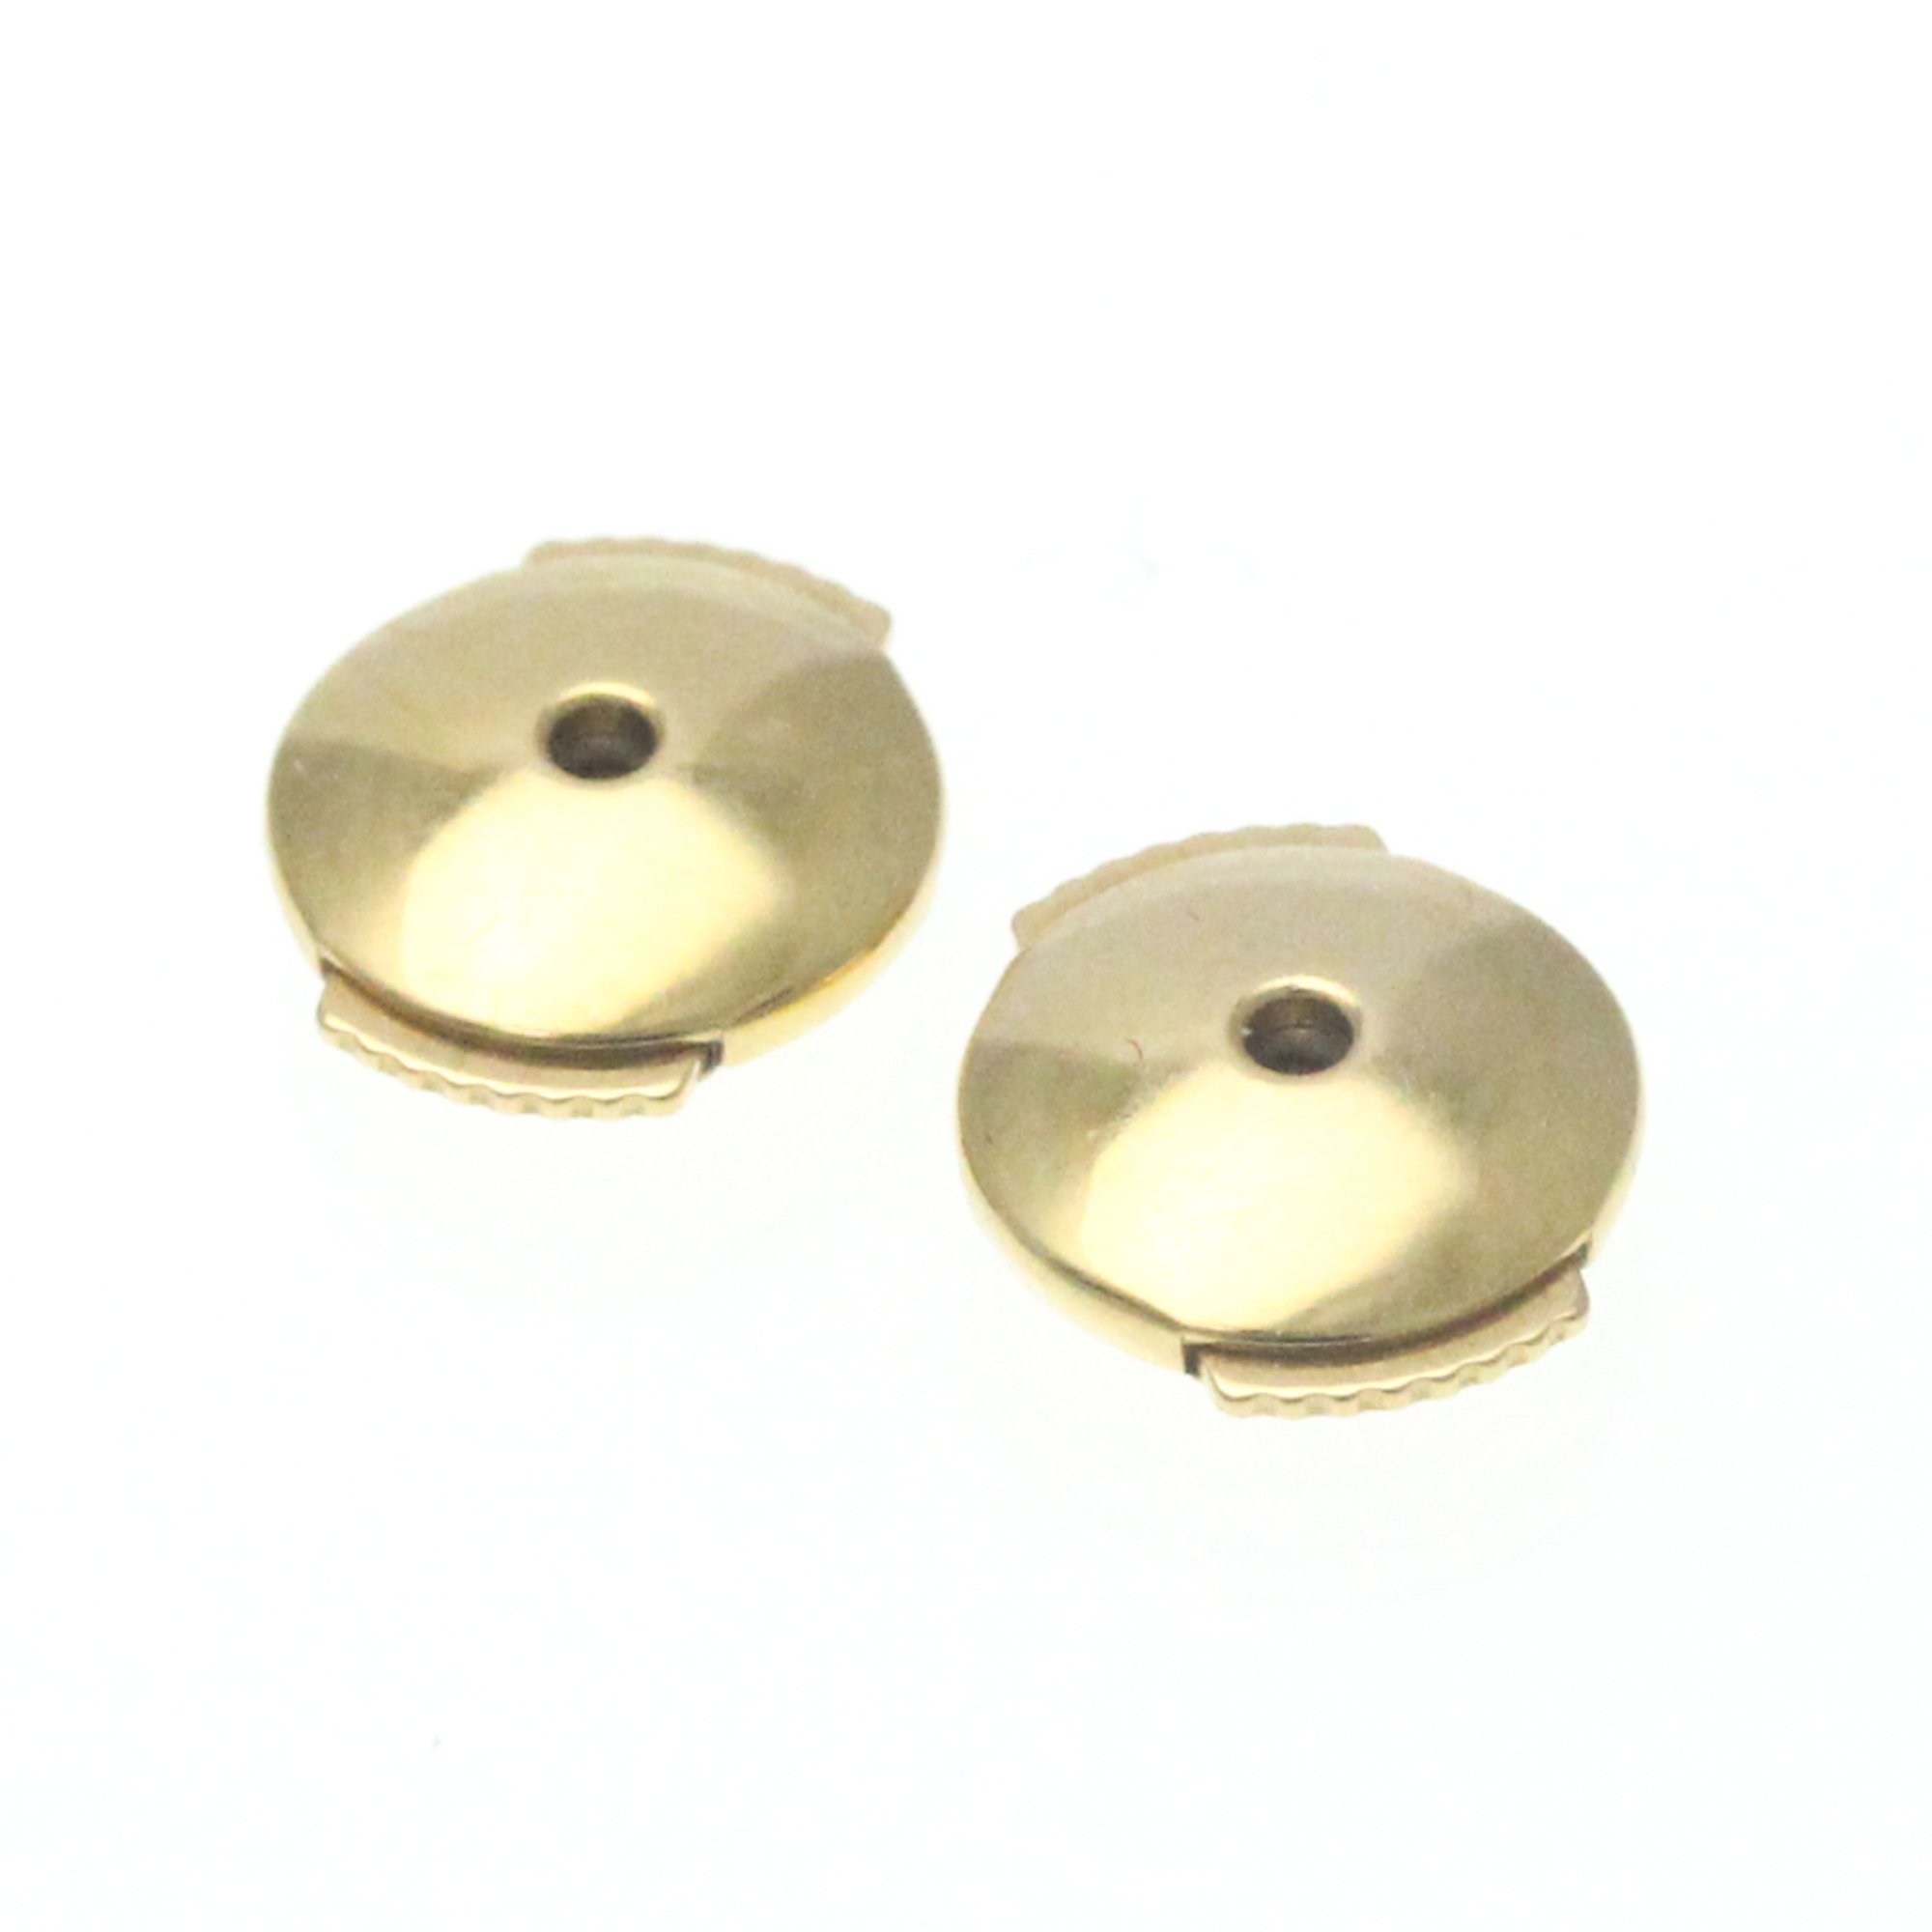 Van Cleef & Arpels Perlee Pearls Of Gold Hoop Earrings Small Model No Stone Yellow Gold (18K) Hoop Earrings Gold